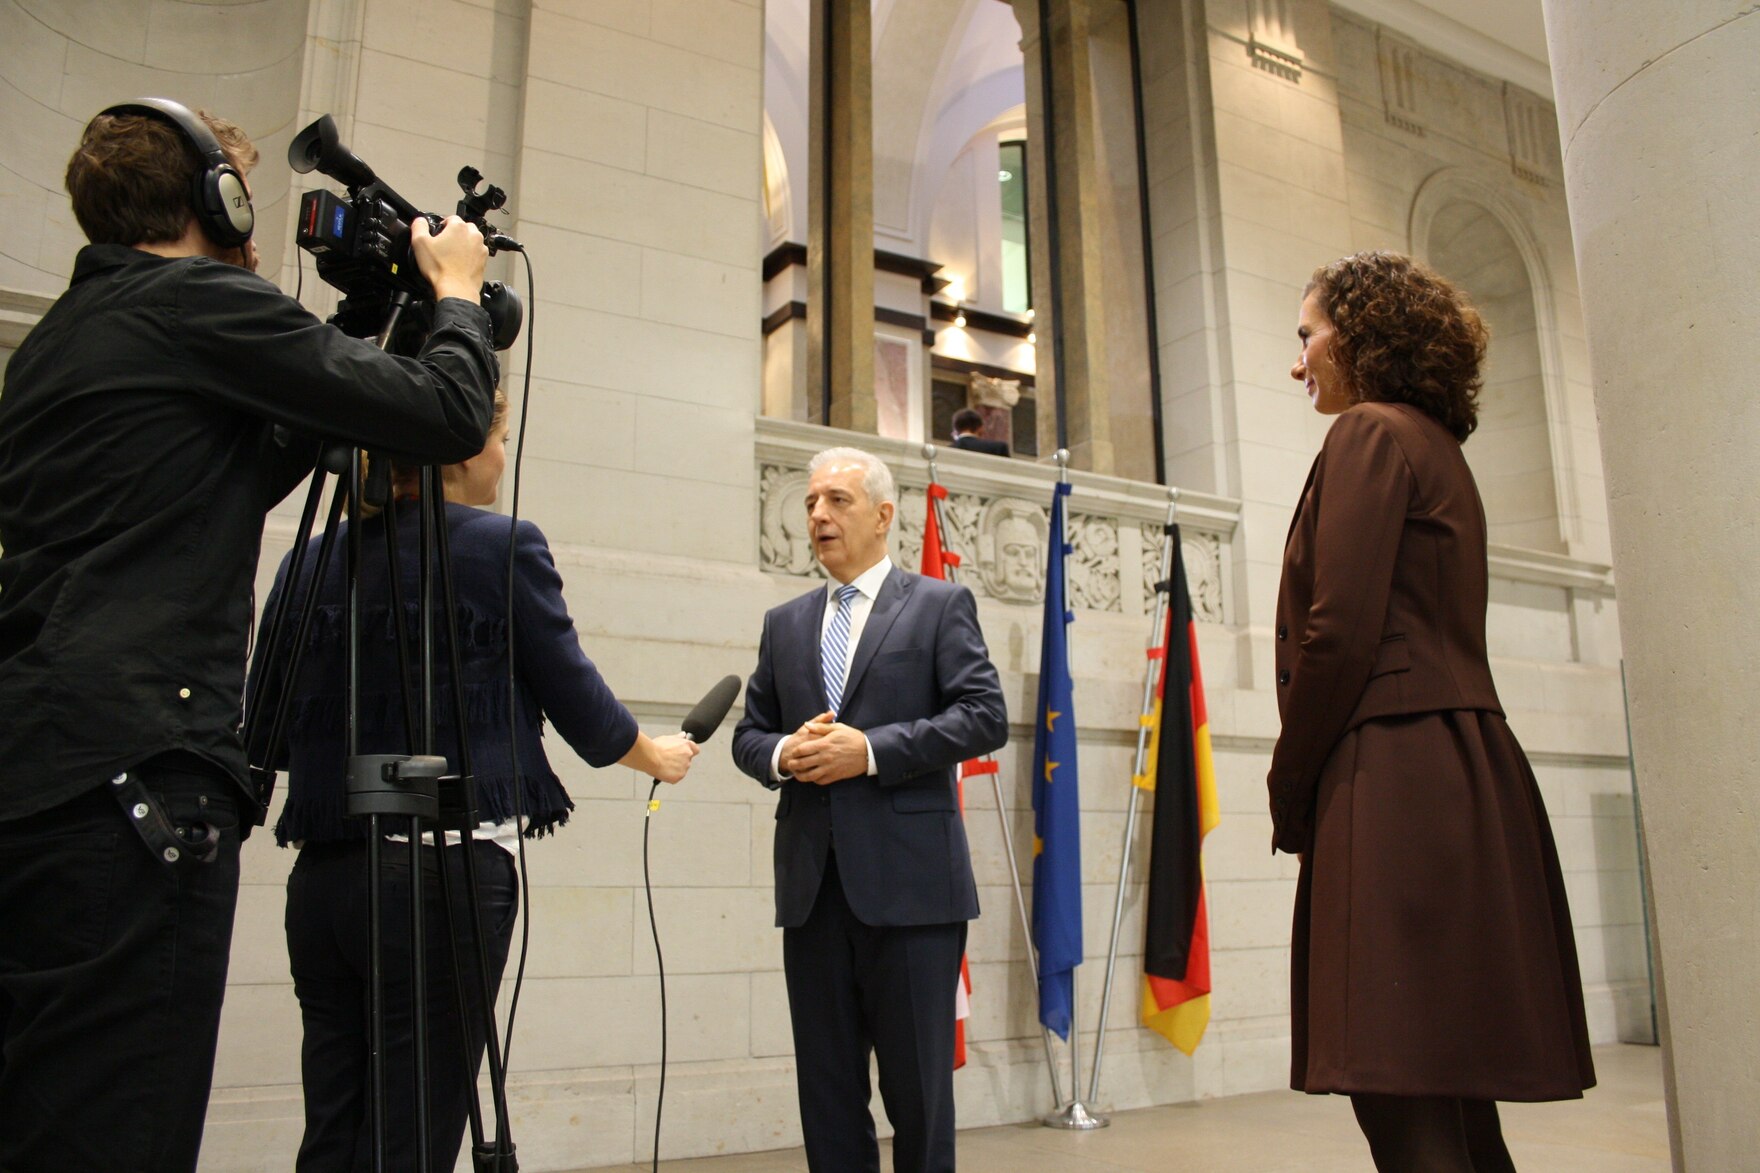 Bundesratspräsident Tillich wird im Bundesratsgebäude von Journalisten interviewt